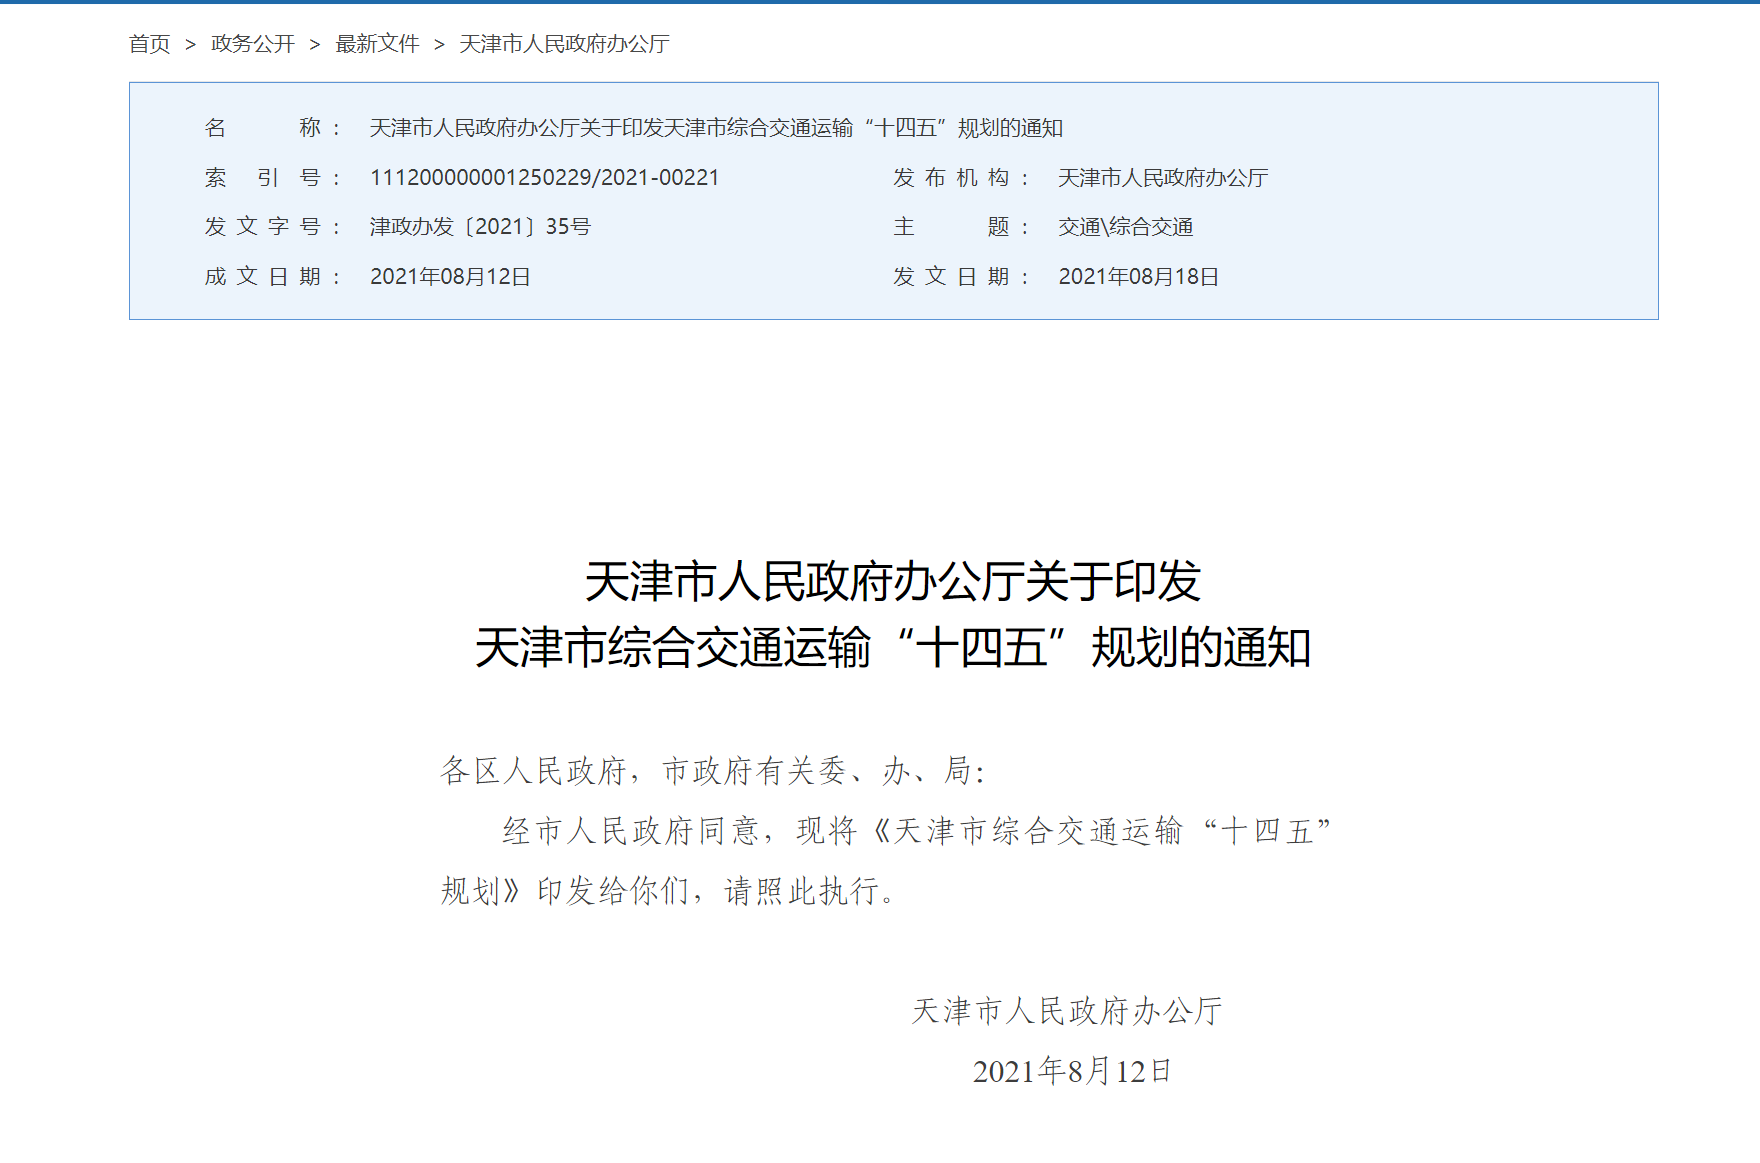 天津交通“十四五”规划公布 空港板块价值再度提升_中国网地产